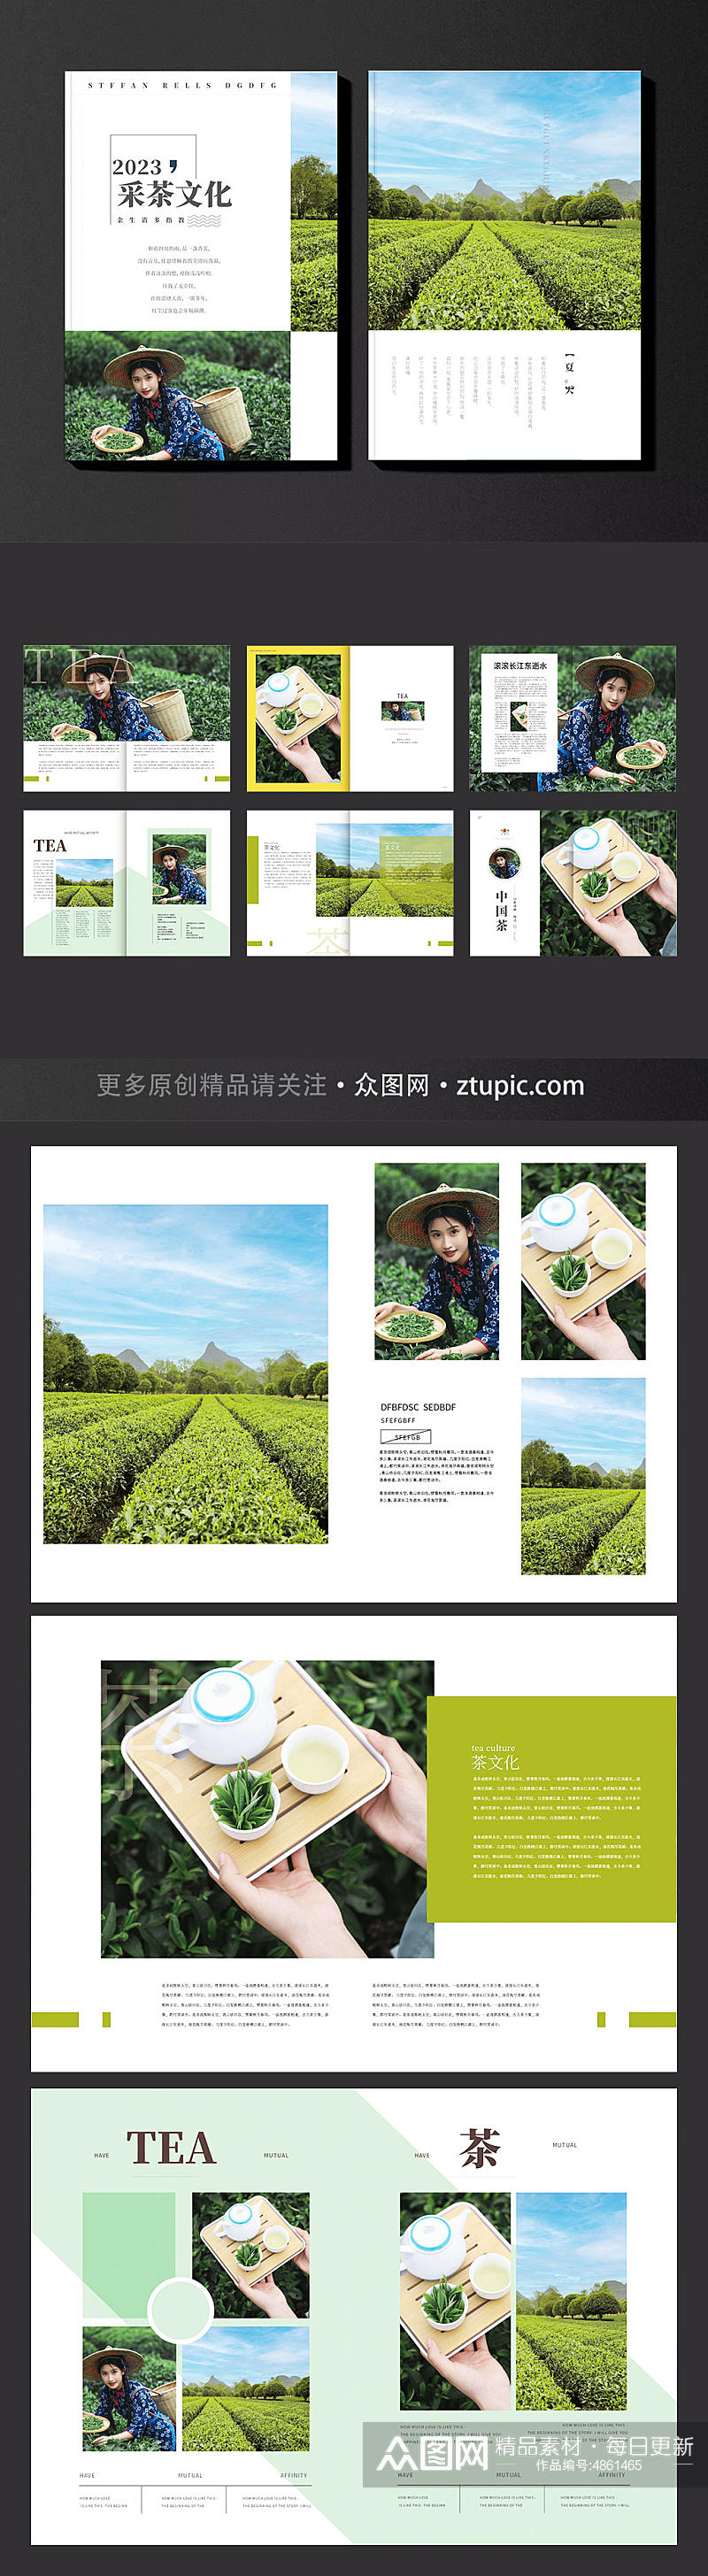 简约茶园采茶项目茶文化宣传画册素材